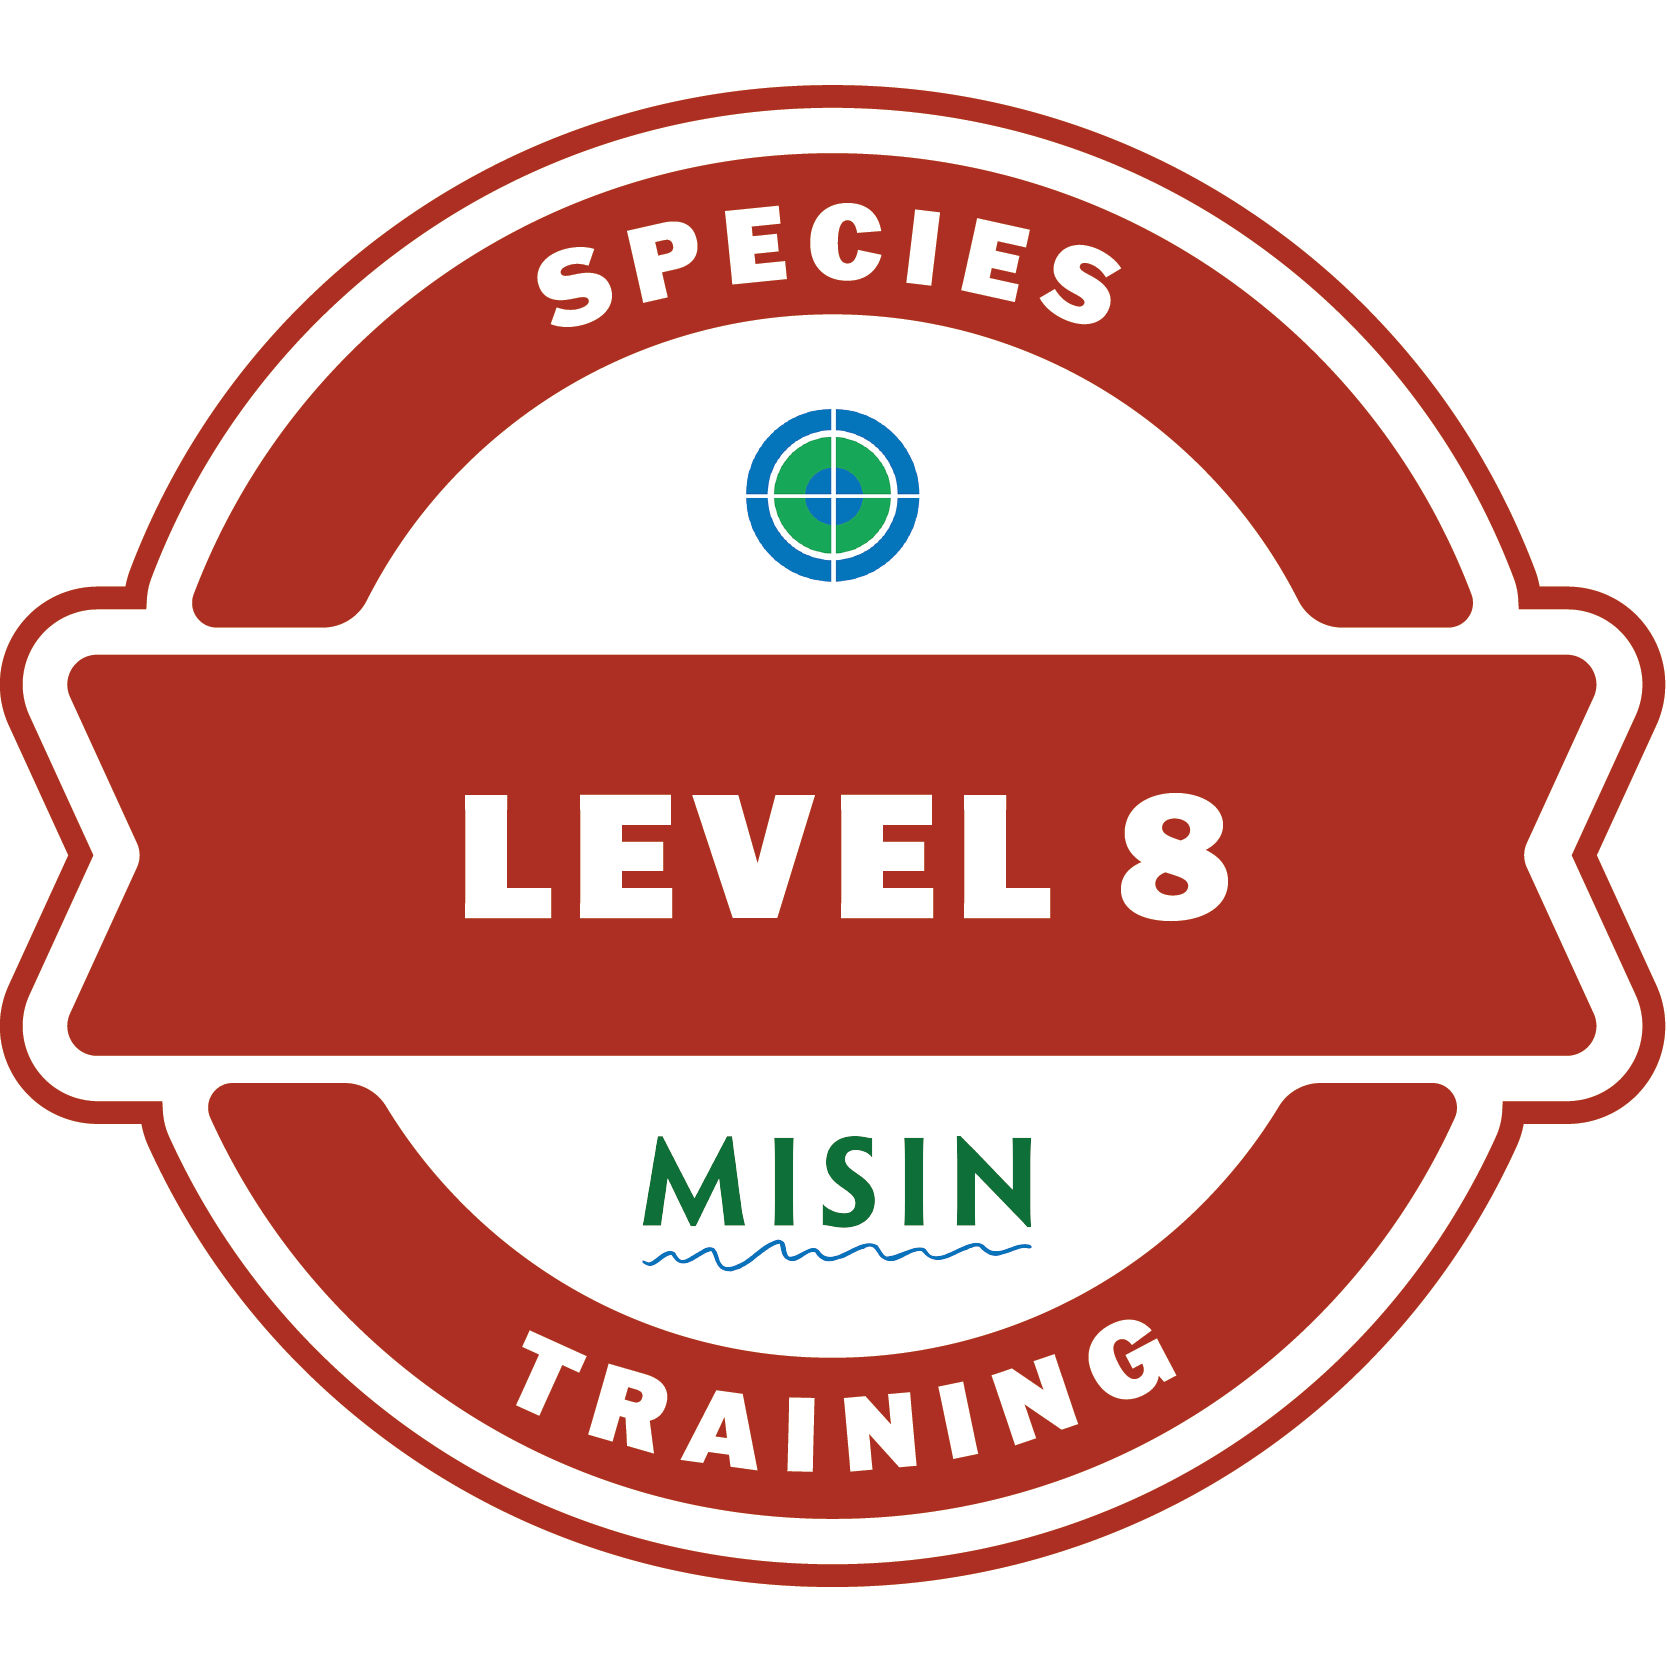 Species Training Level 8